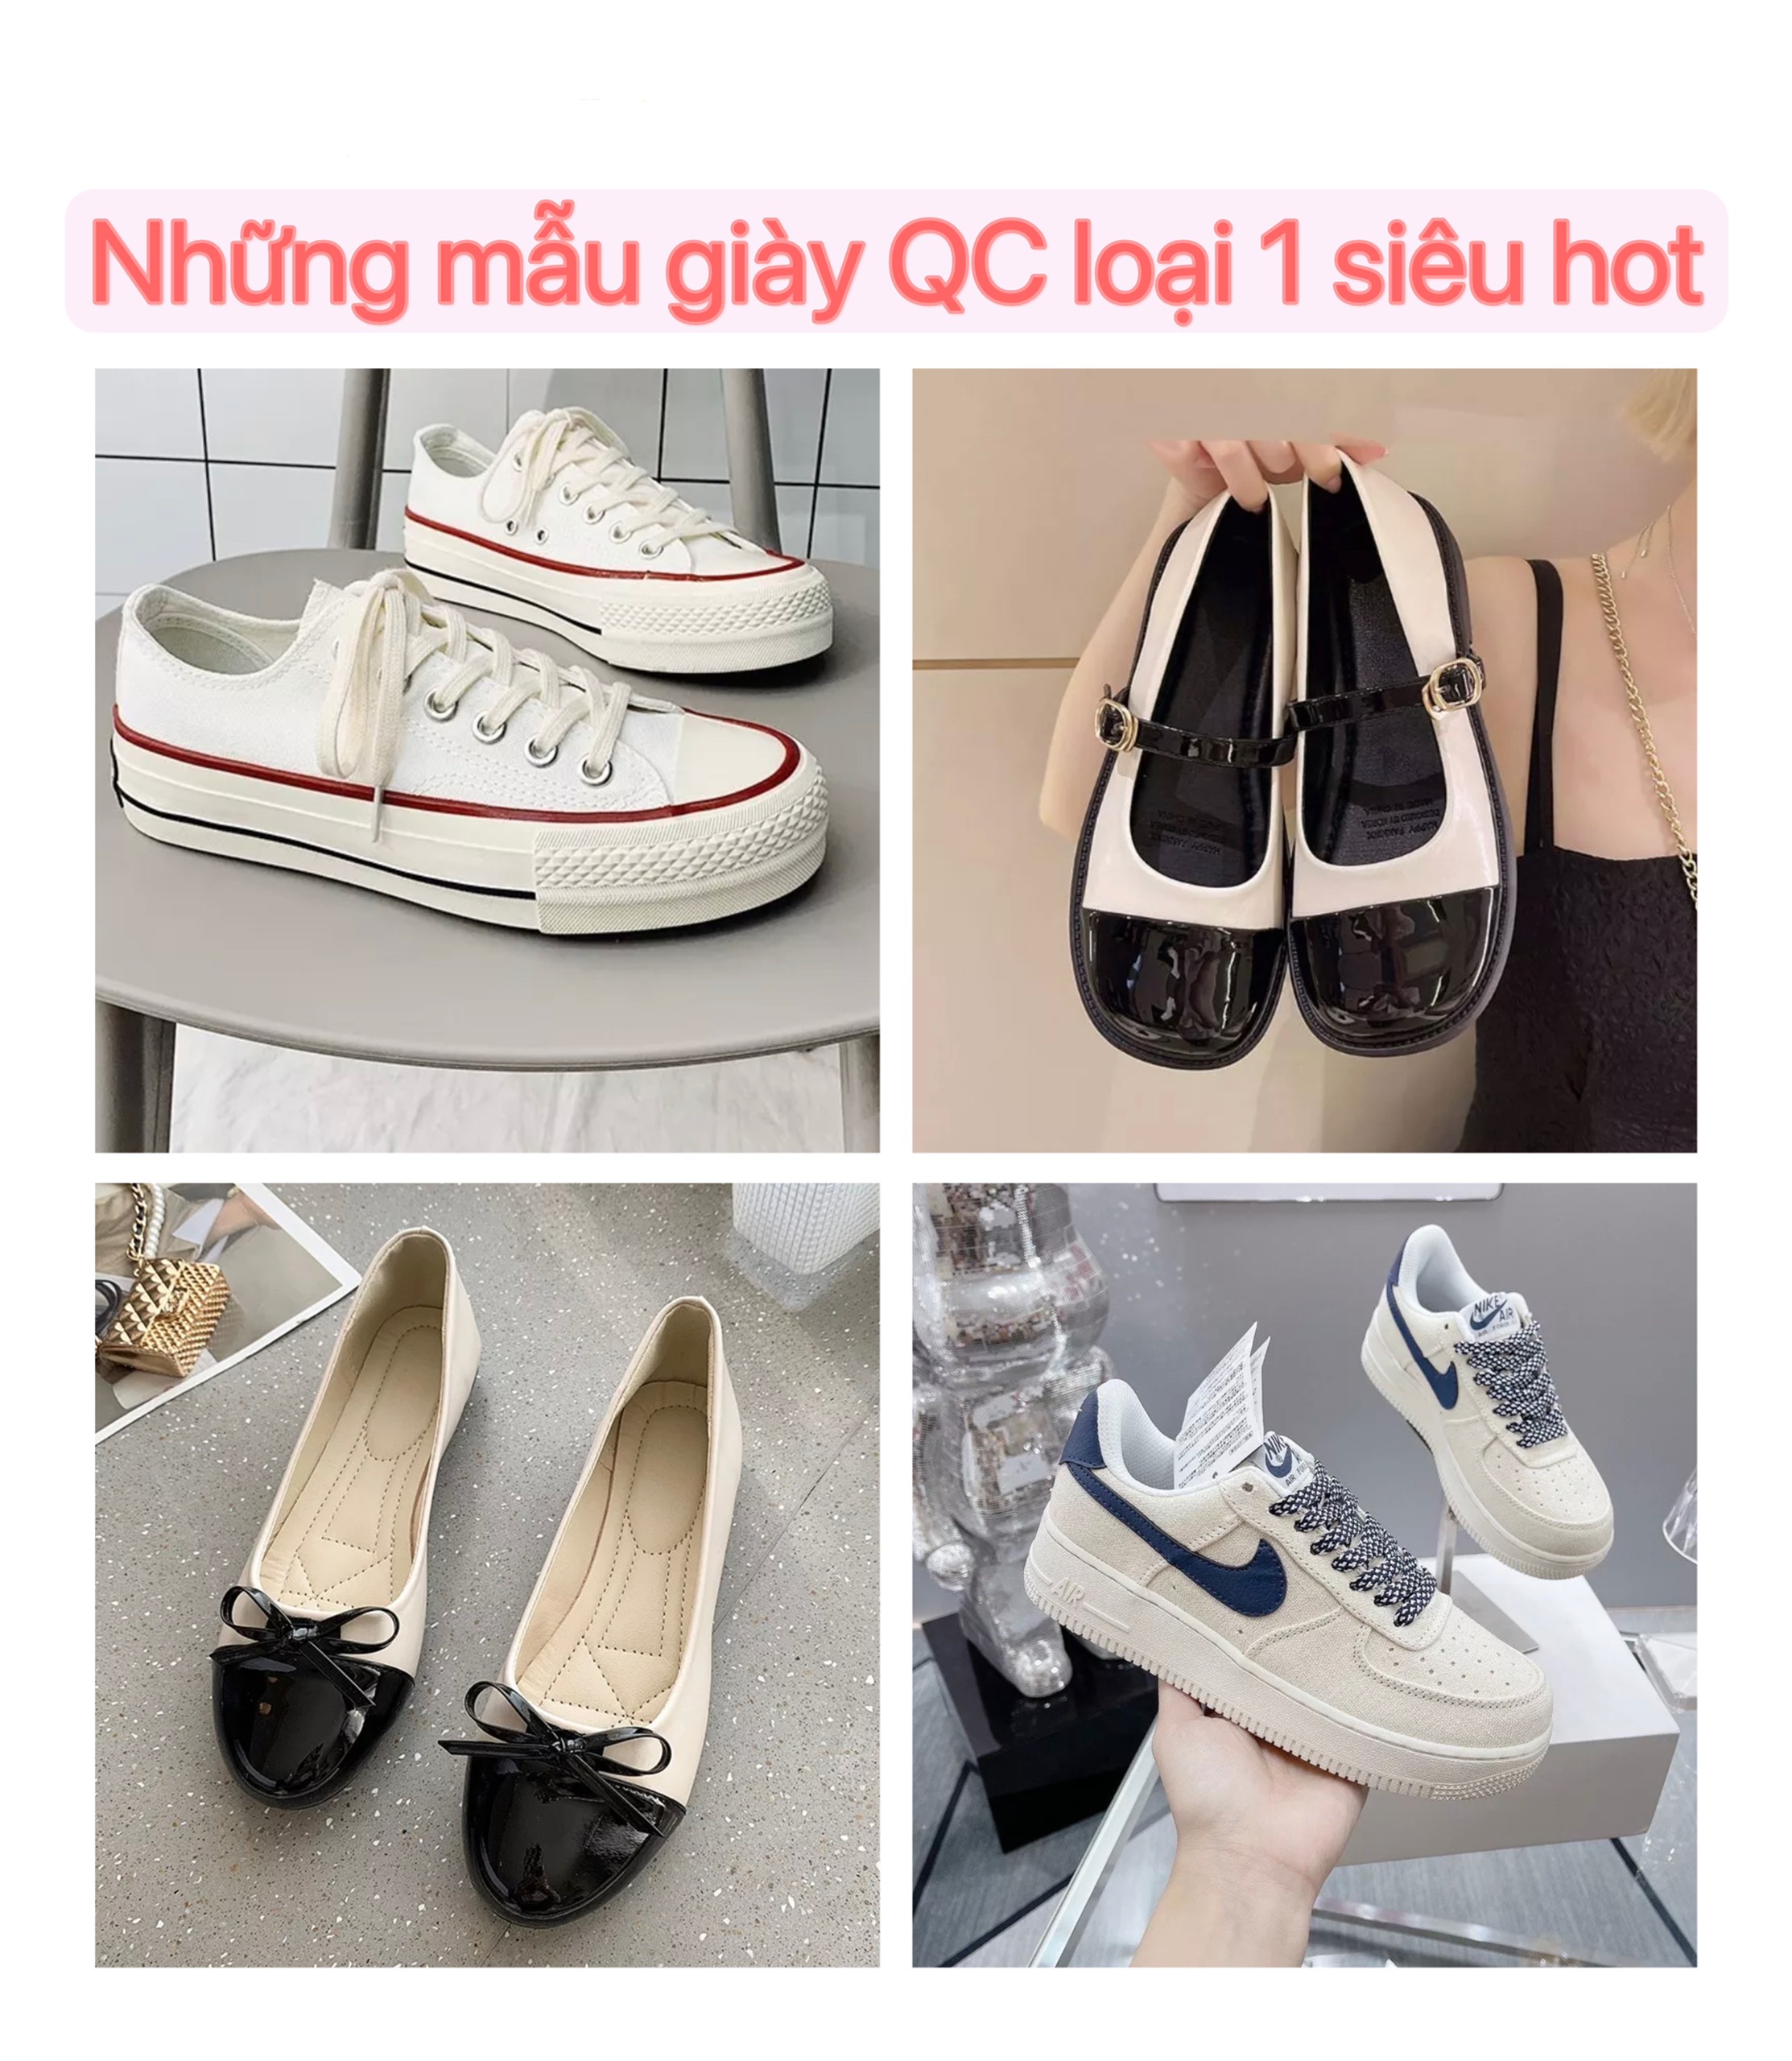 Những mẫu giày Quảng Châu loại 1